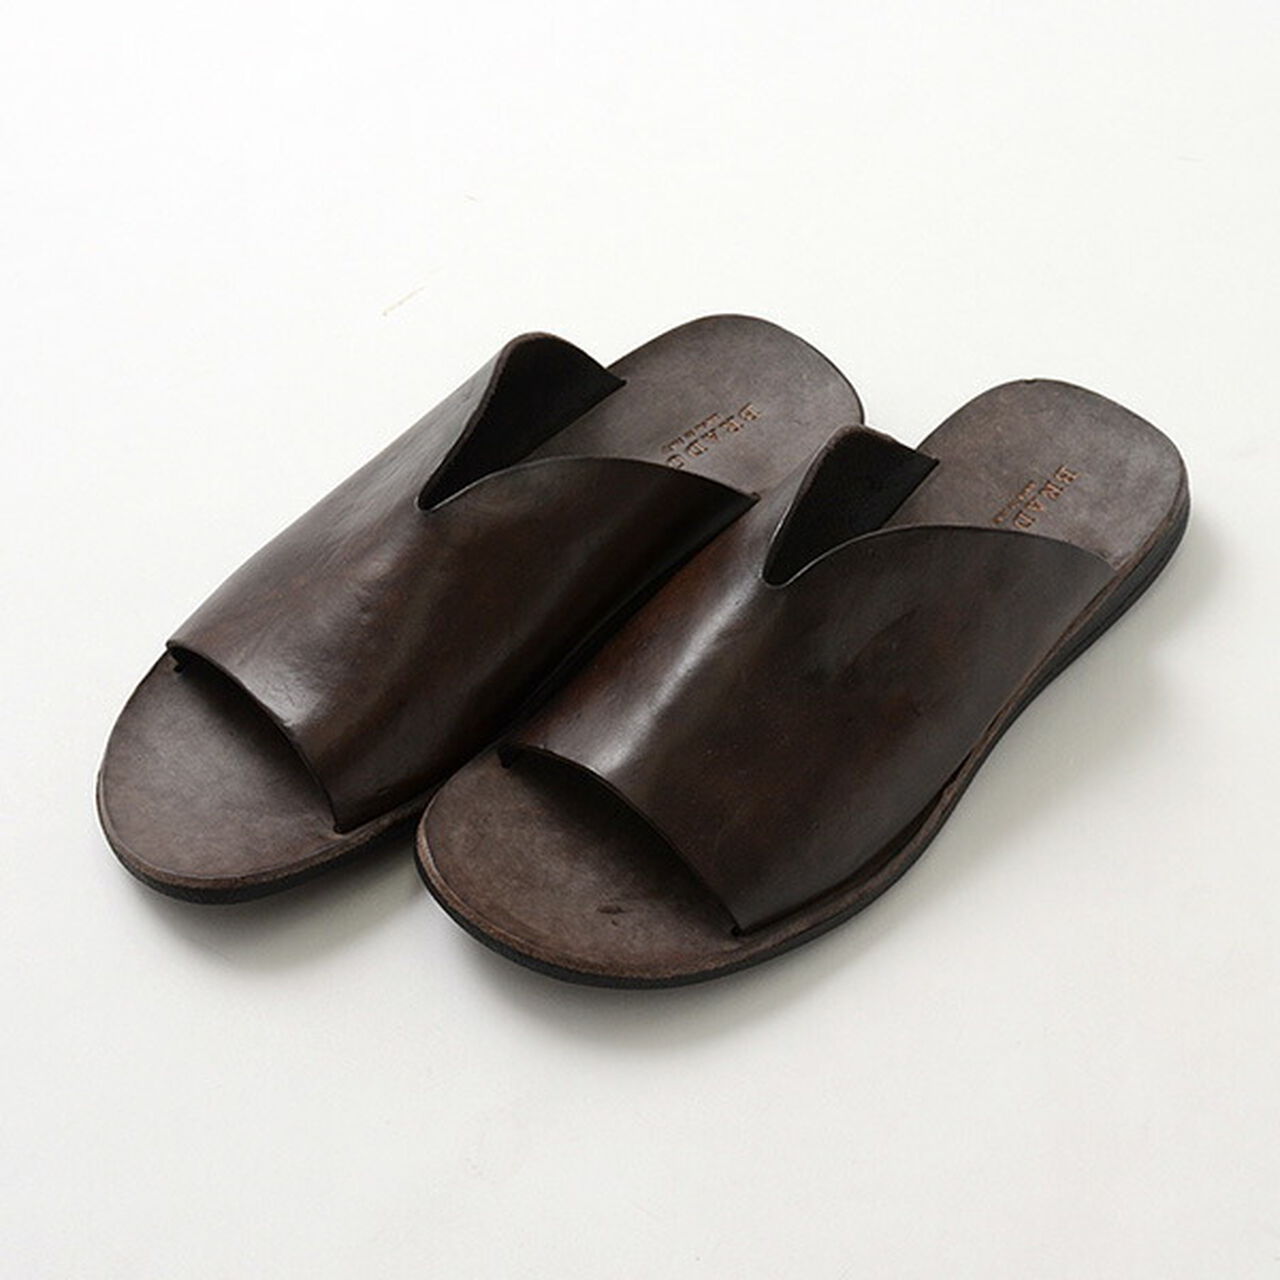 Leather Sandals,DarkBrown, large image number 0